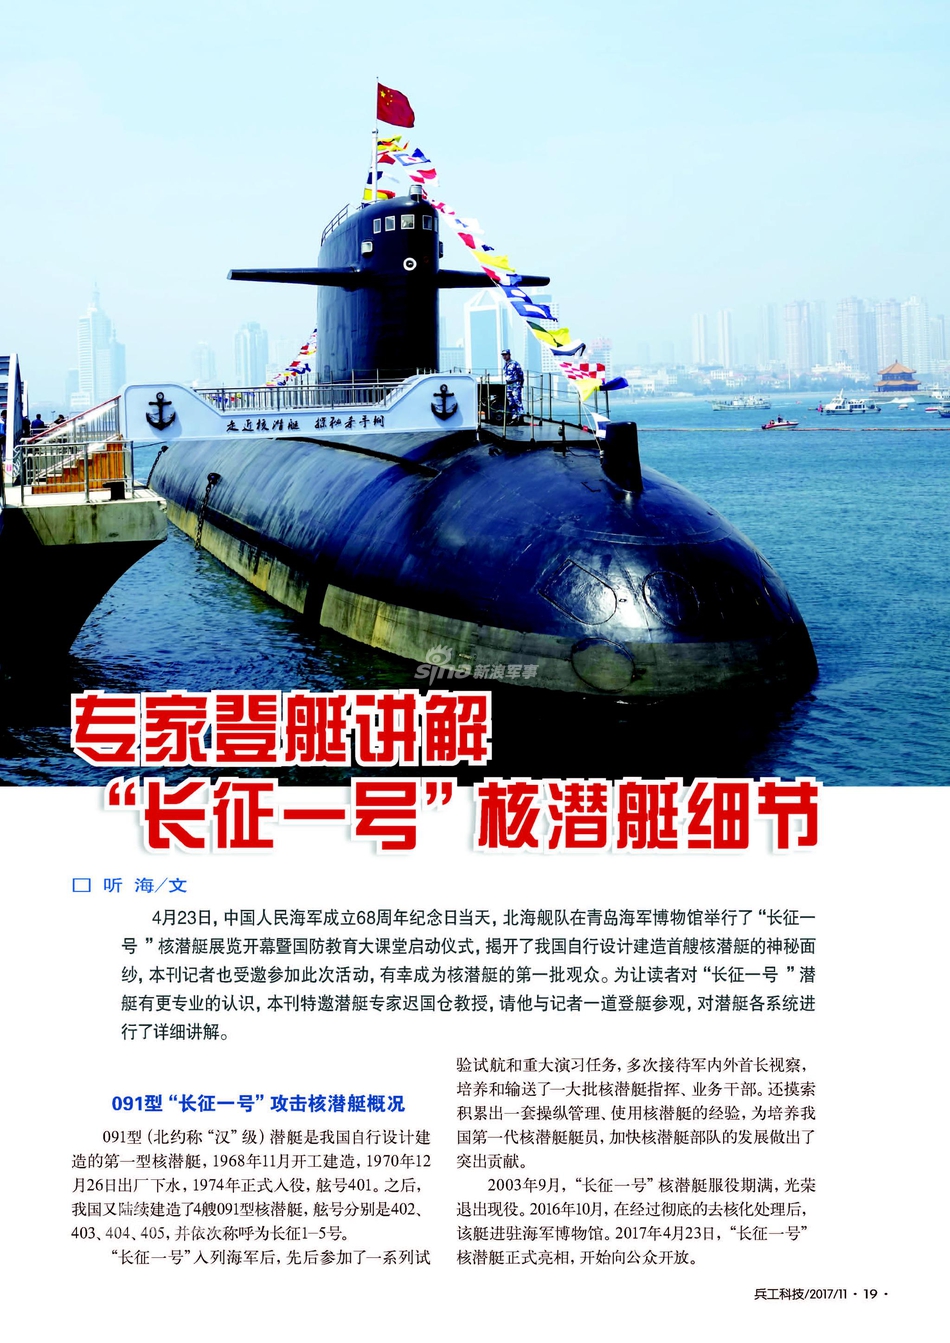 中国第一艘核潜艇完全图解七大舱室全部揭秘